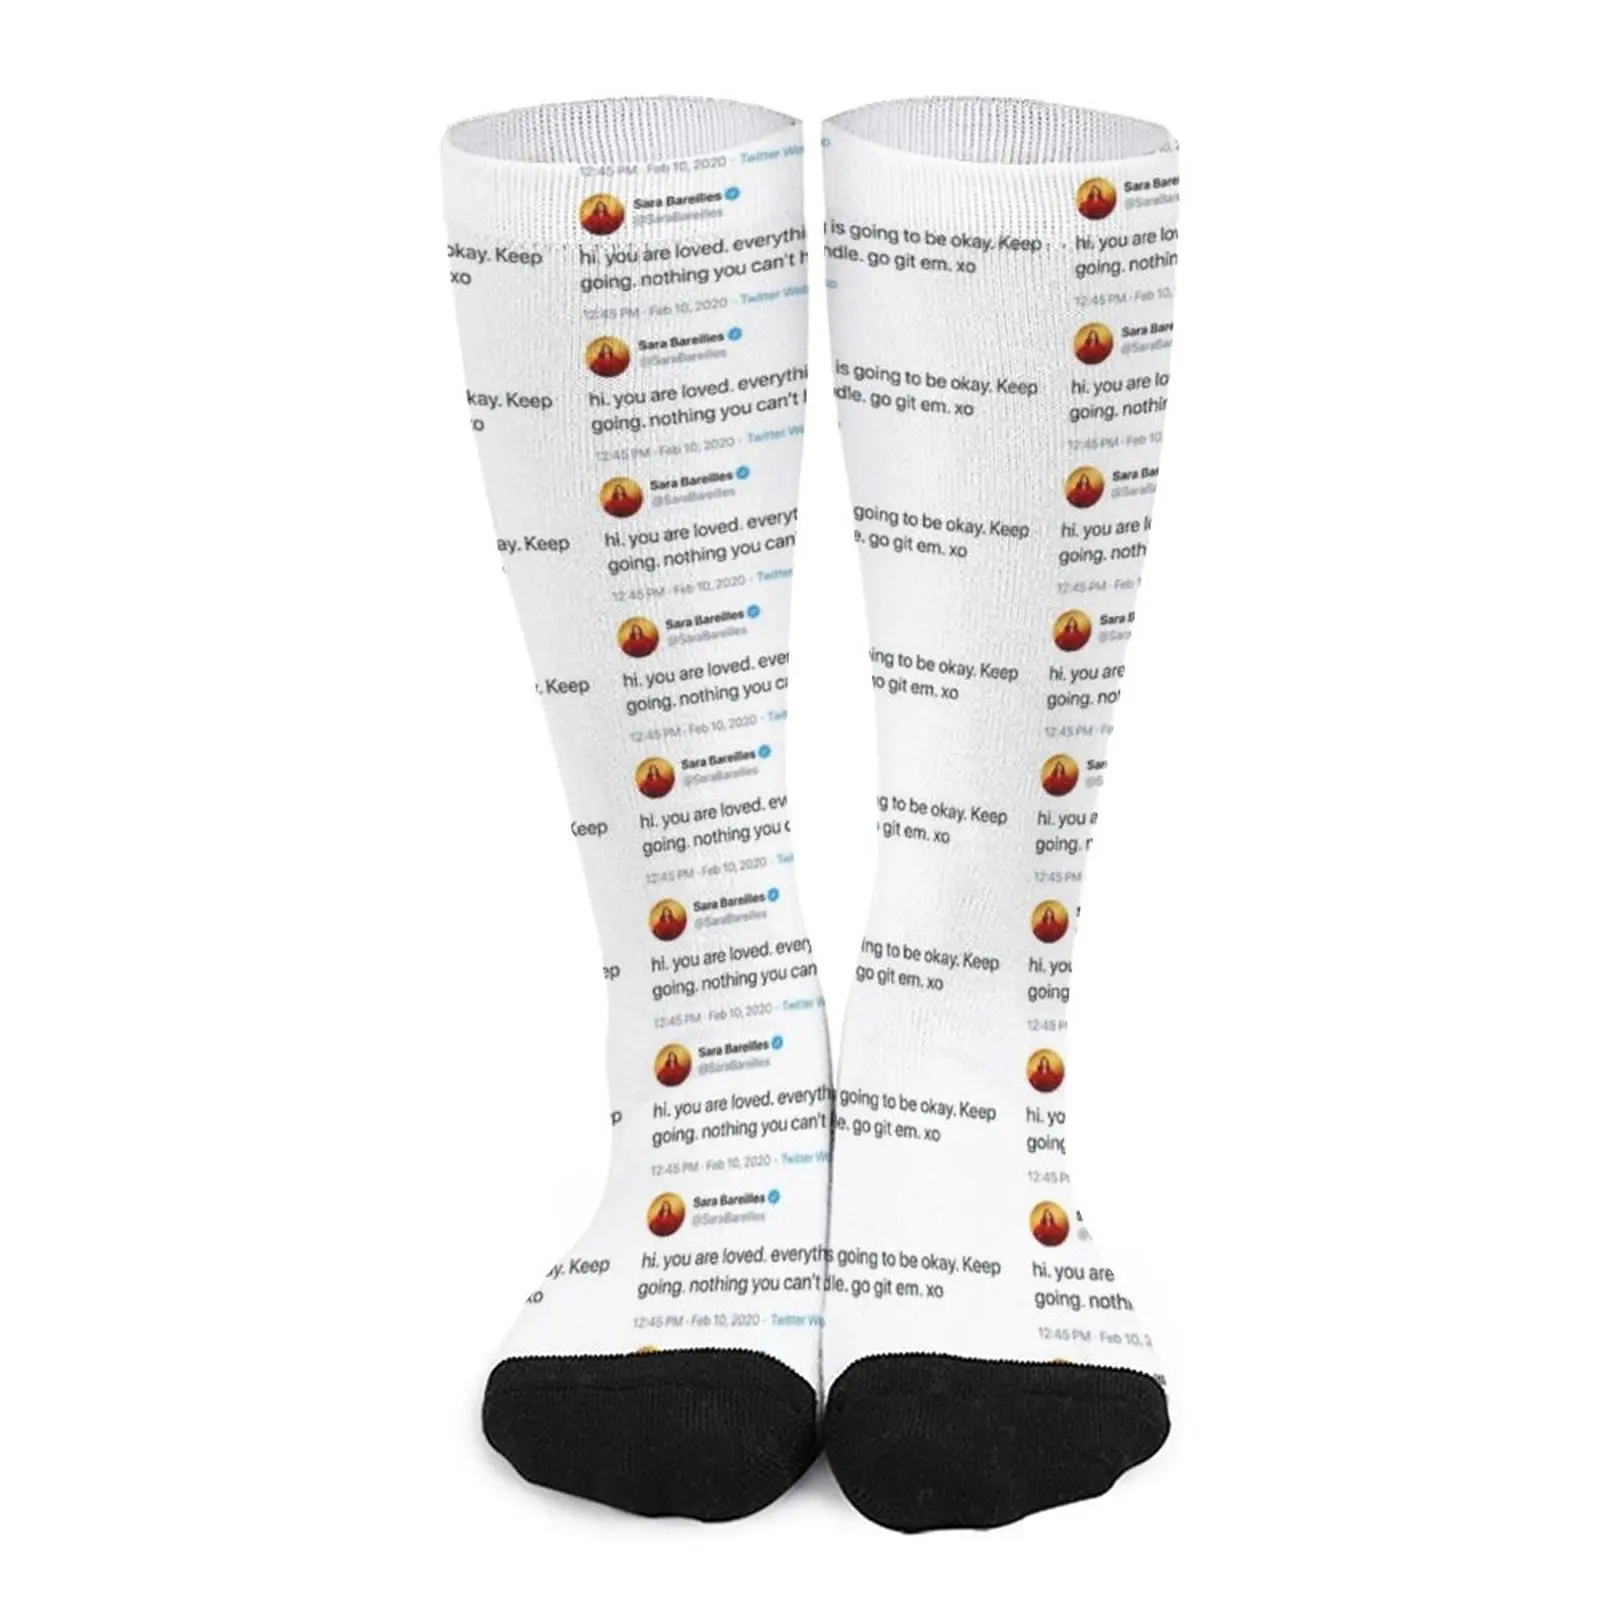 sara tweet Socks Socks Women's Antiskid soccer socks funny socks for men